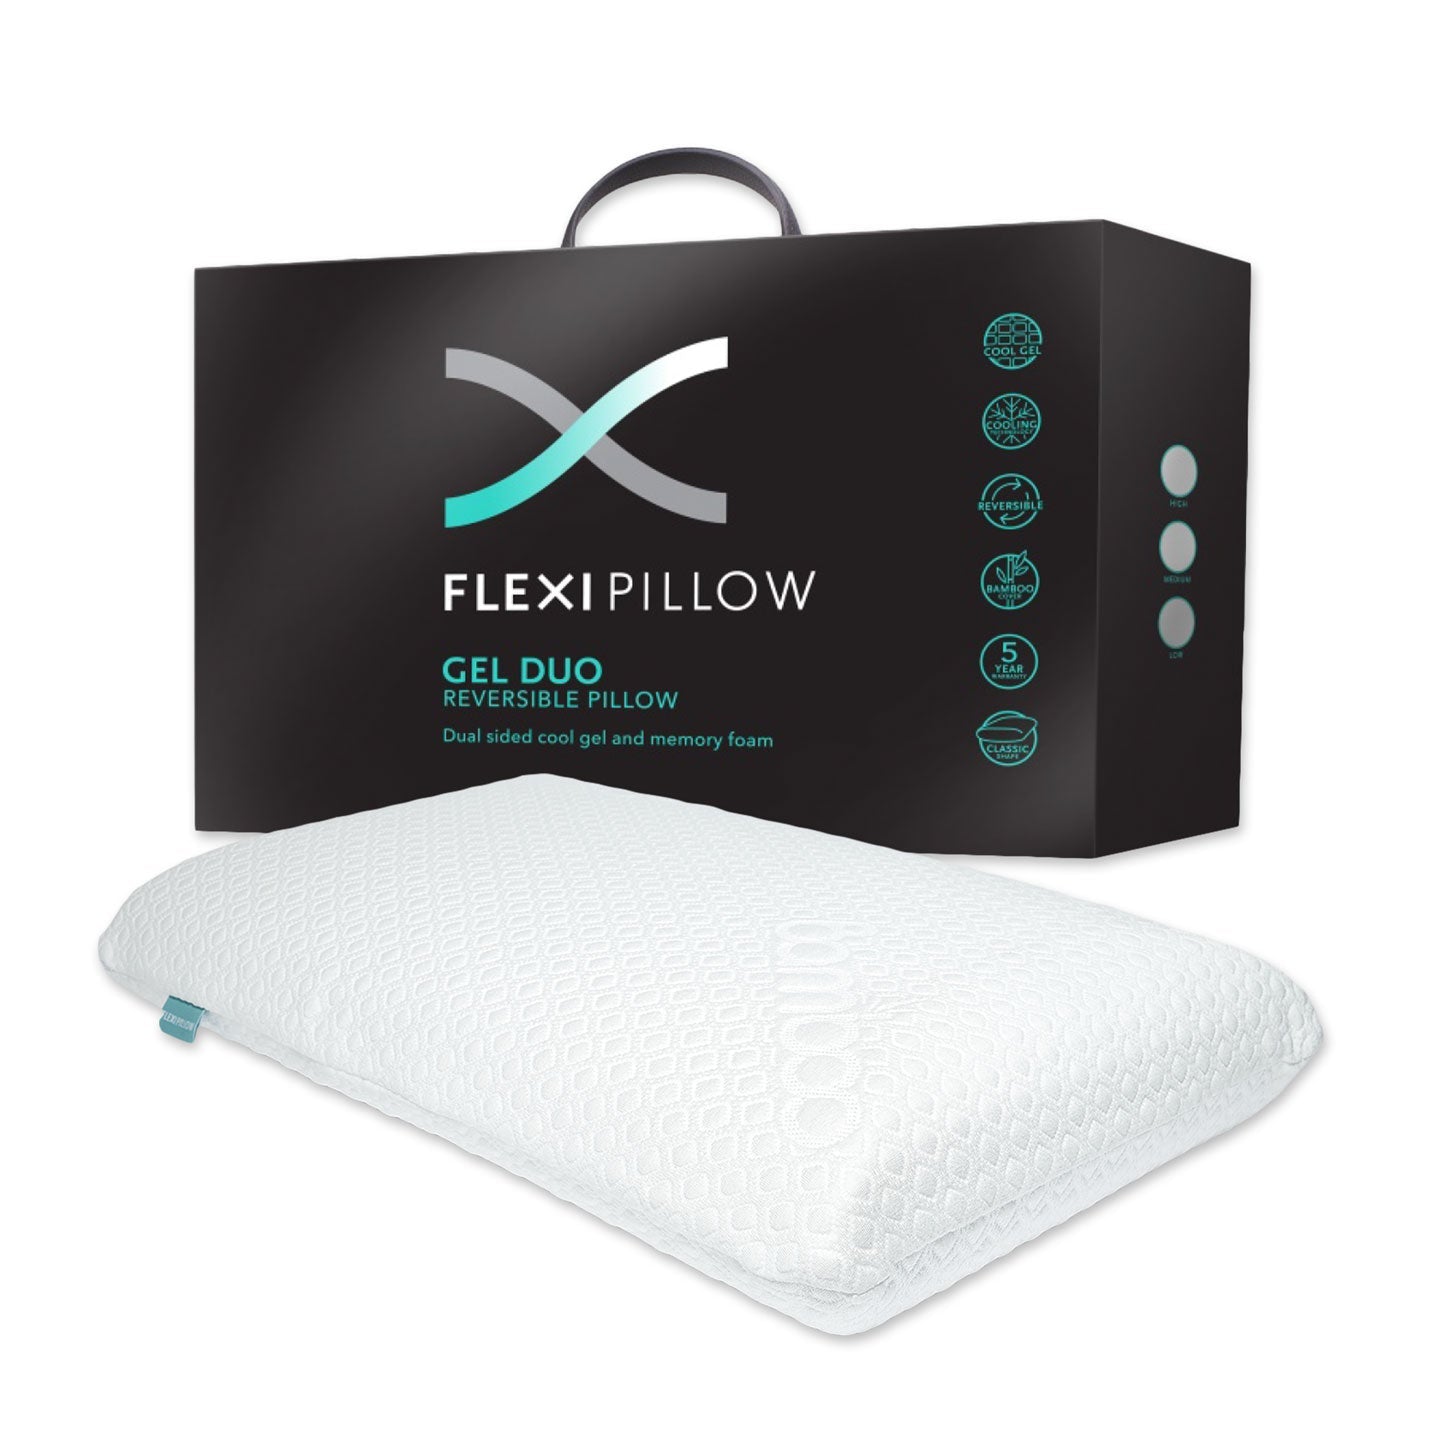 Flexi Pillow Gel Duo Pillow - Mattress & Pillow SciencePillows